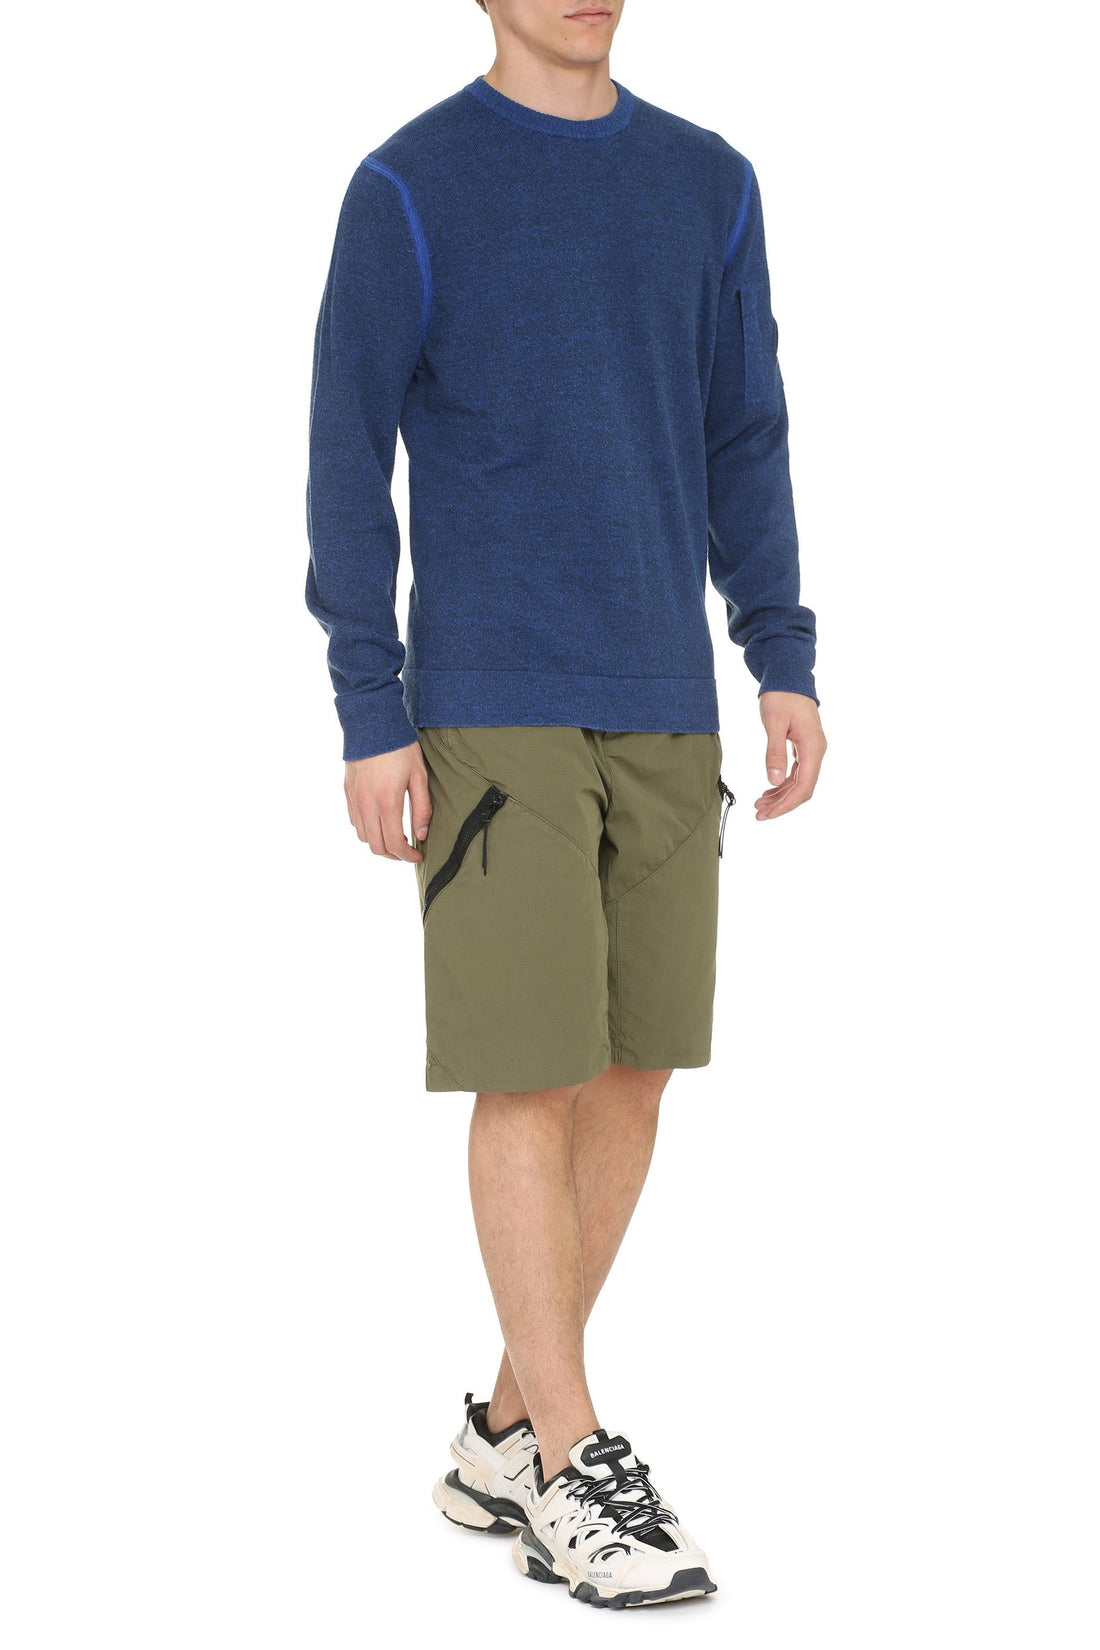 C.P. Company-OUTLET-SALE-Linen blend crew-neck sweater-ARCHIVIST